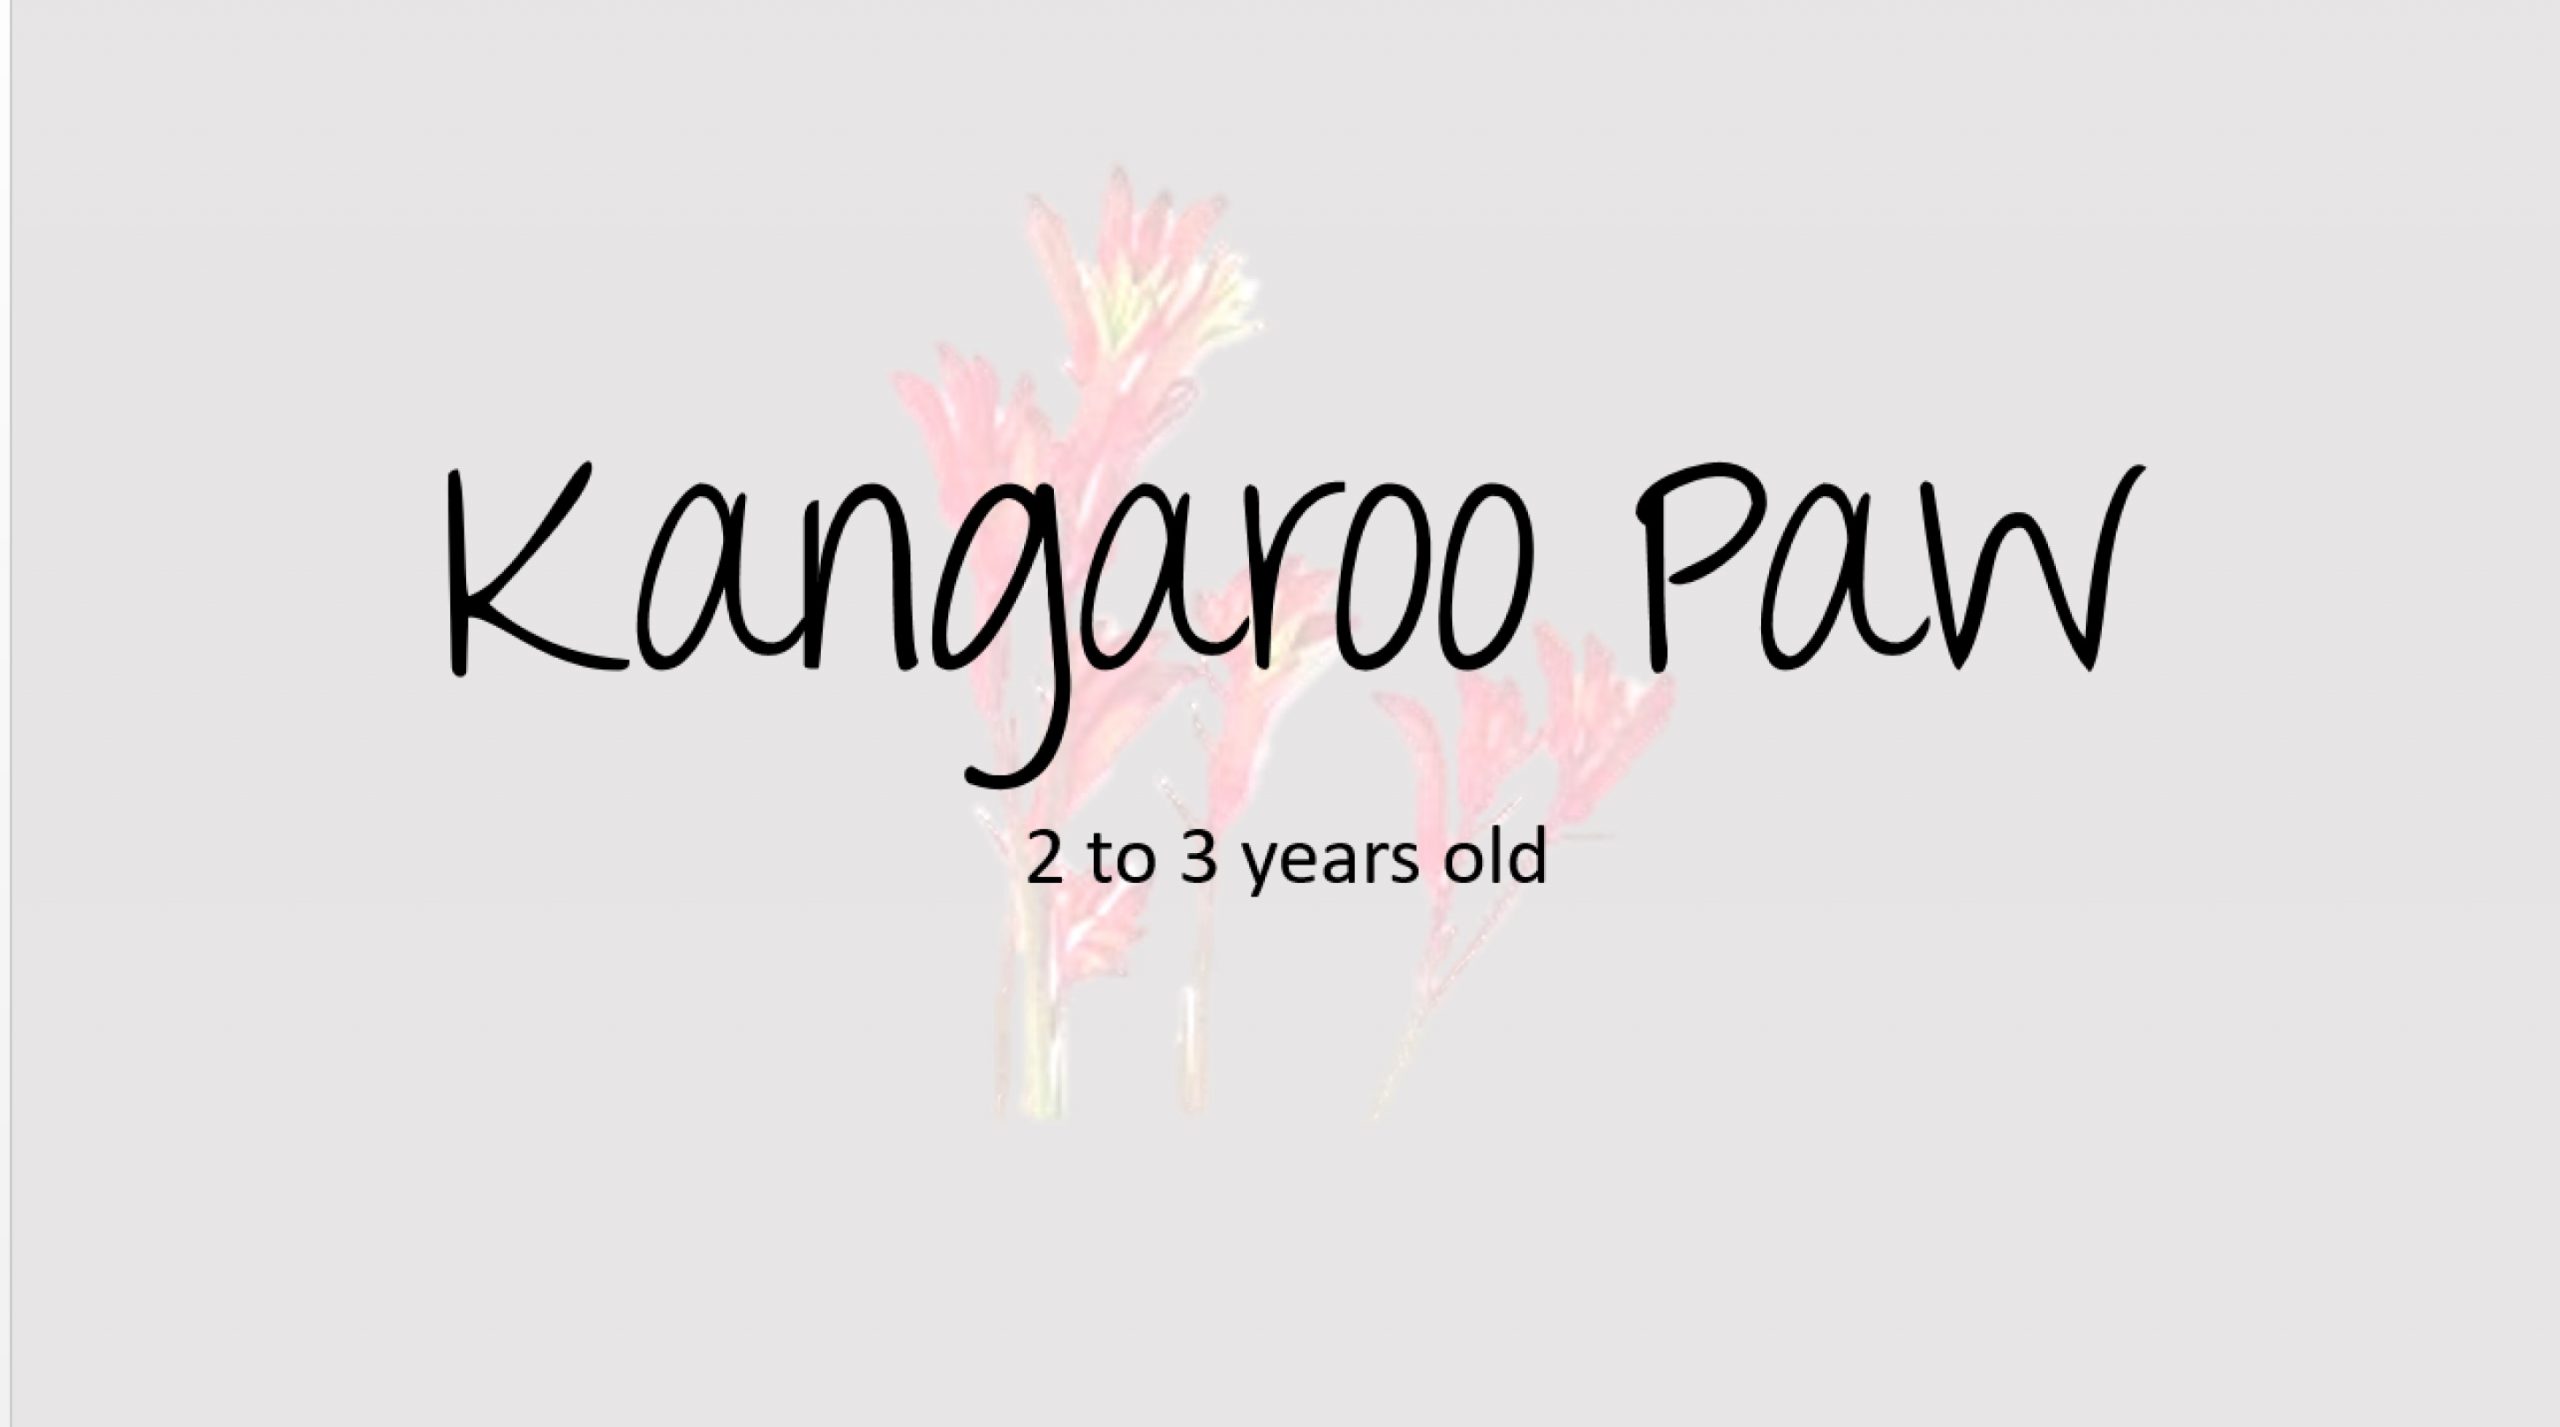 Kangaroo Paw Title